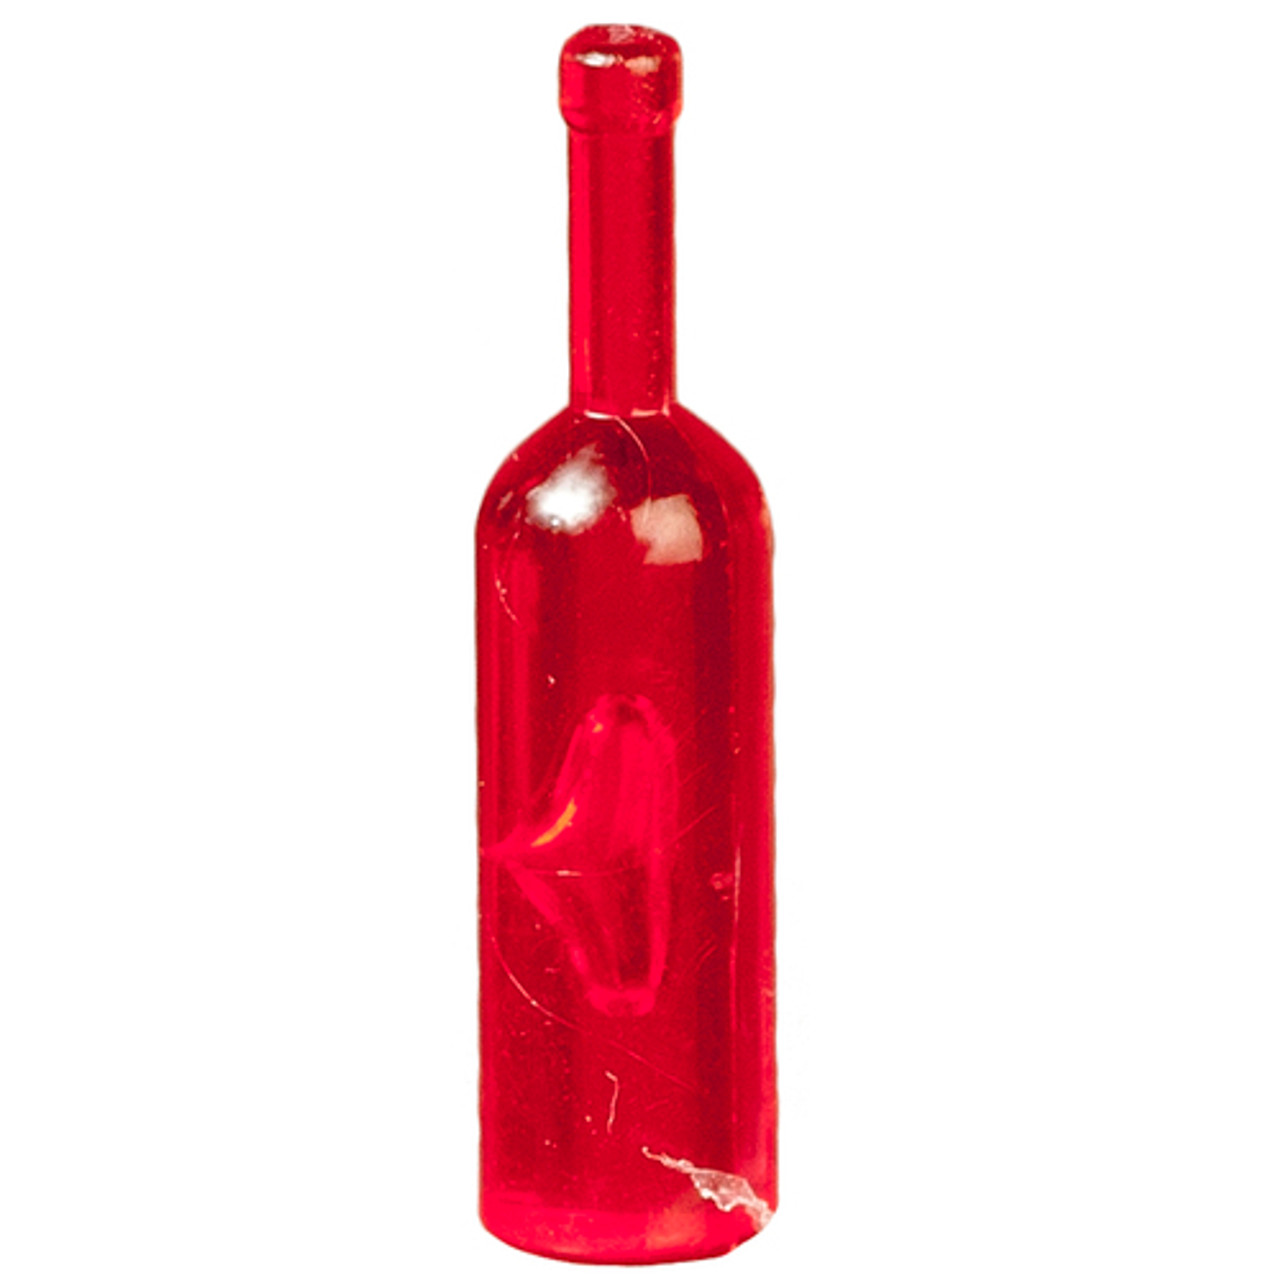 Liquor Bottle Mold - Bulk and Red